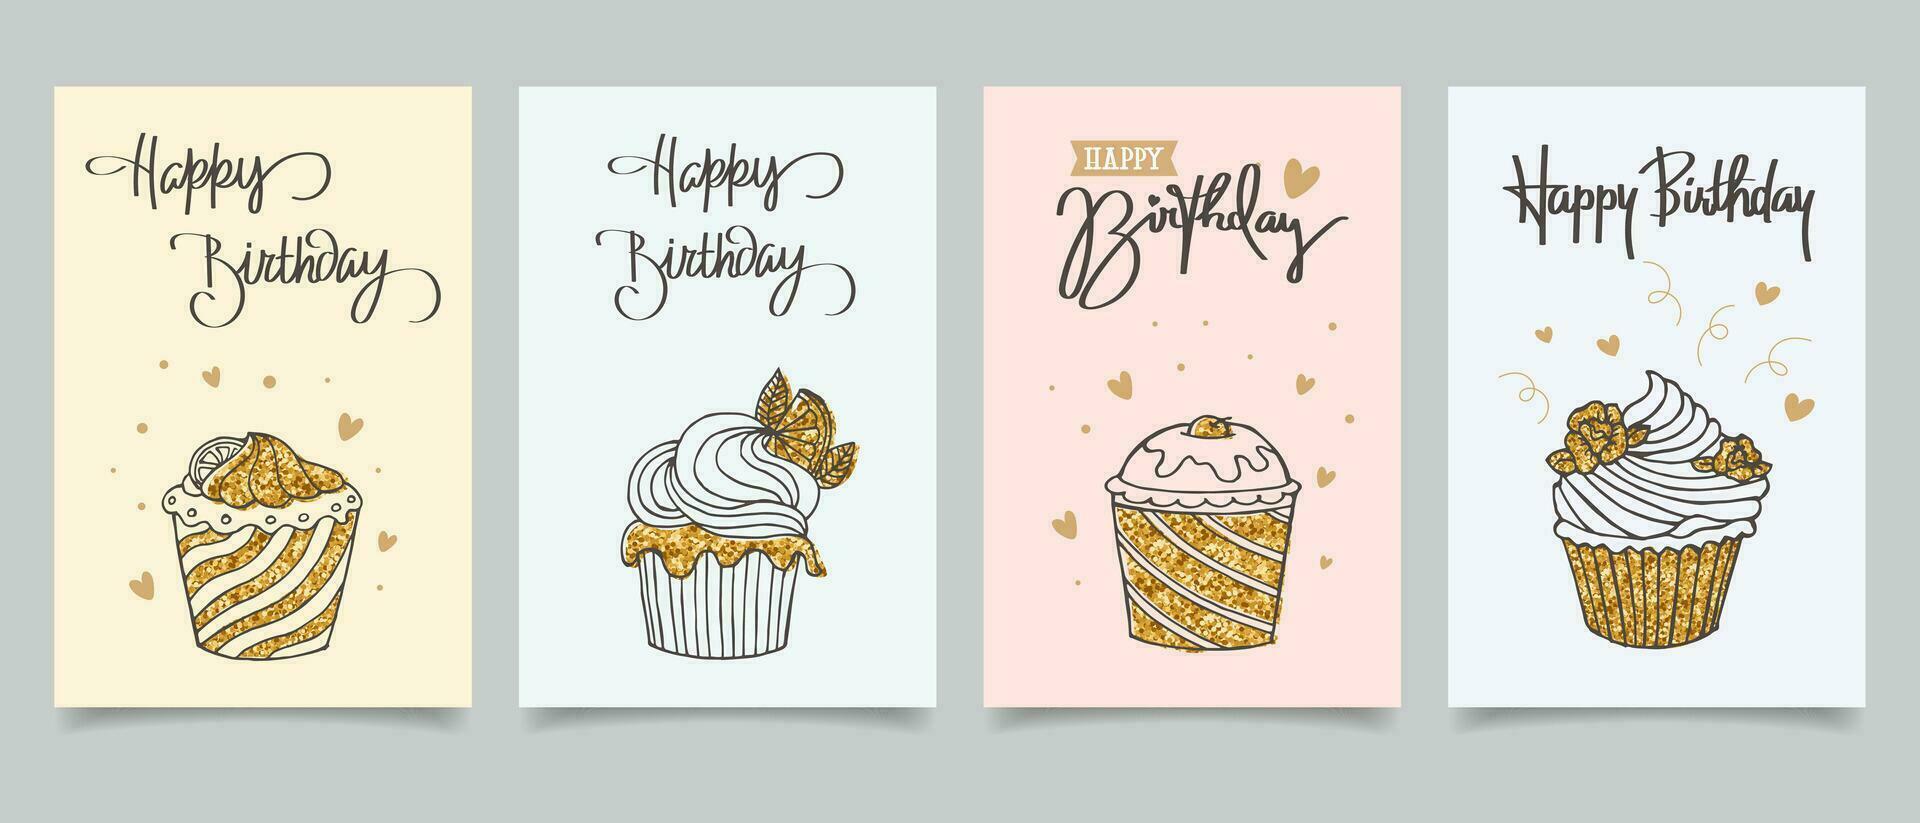 contento cumpleaños. conjunto de saludo tarjetas con pasteles, globos, regalos y fiesta sombreros con caligrafía. linda Felicidades plantillas en un sencillo estilo. vector